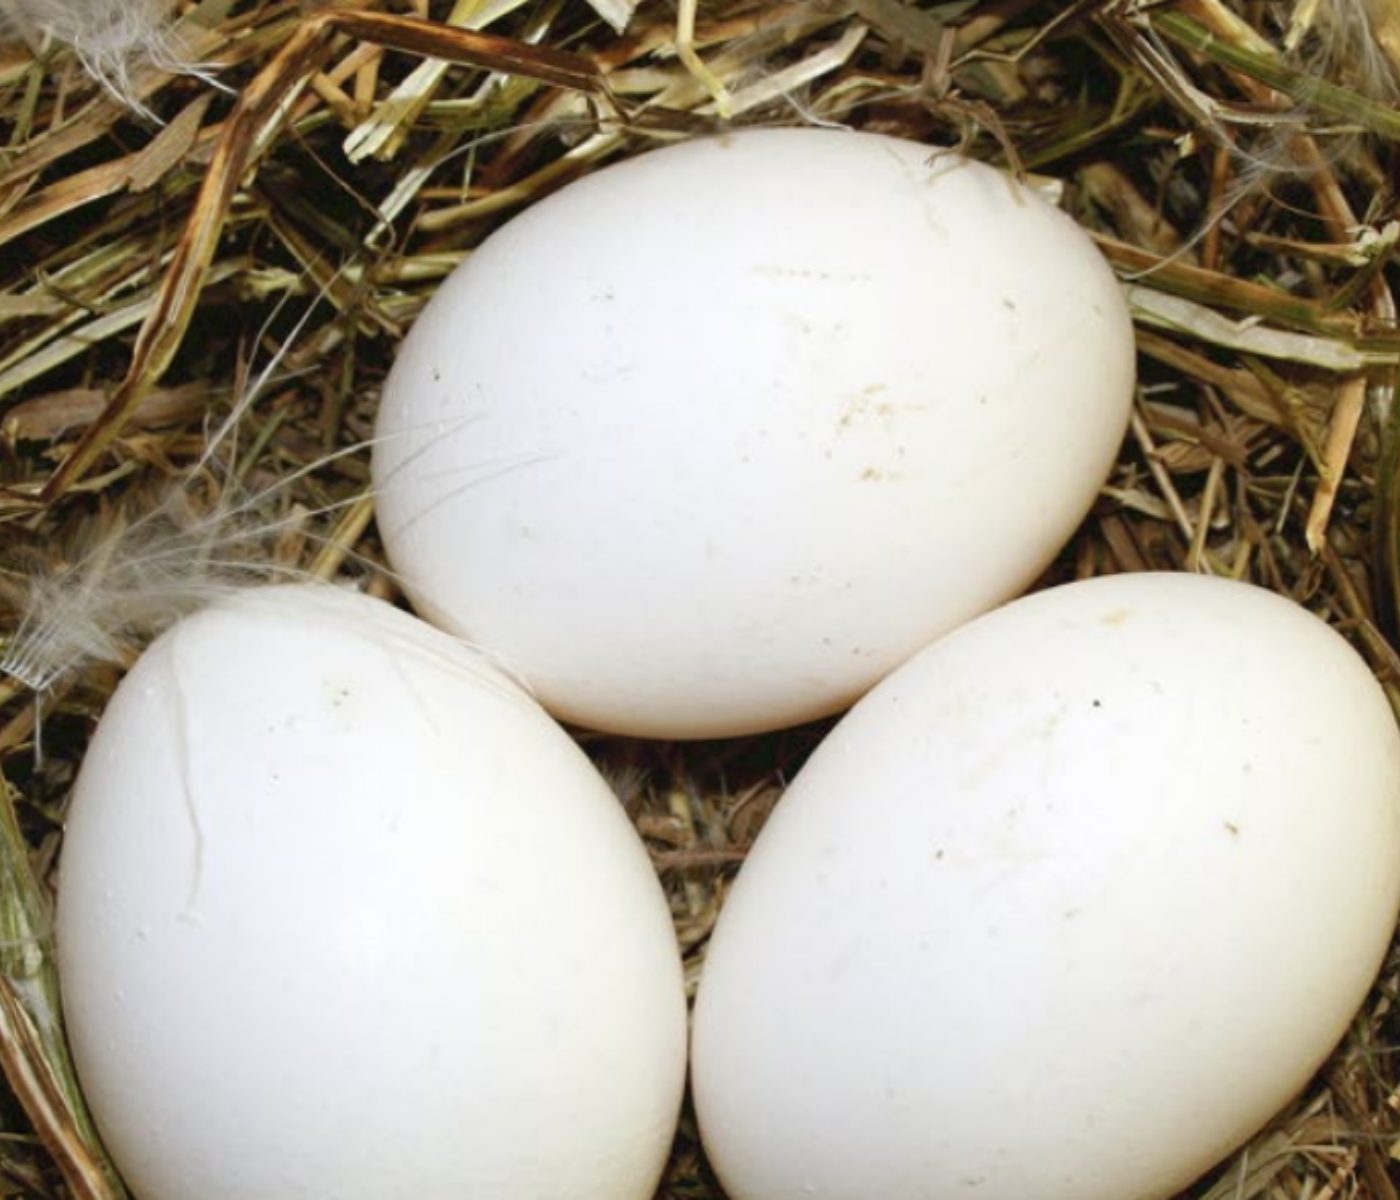 Desempenho e sujidade de ovo de poedeiras suplementadas com probióticos